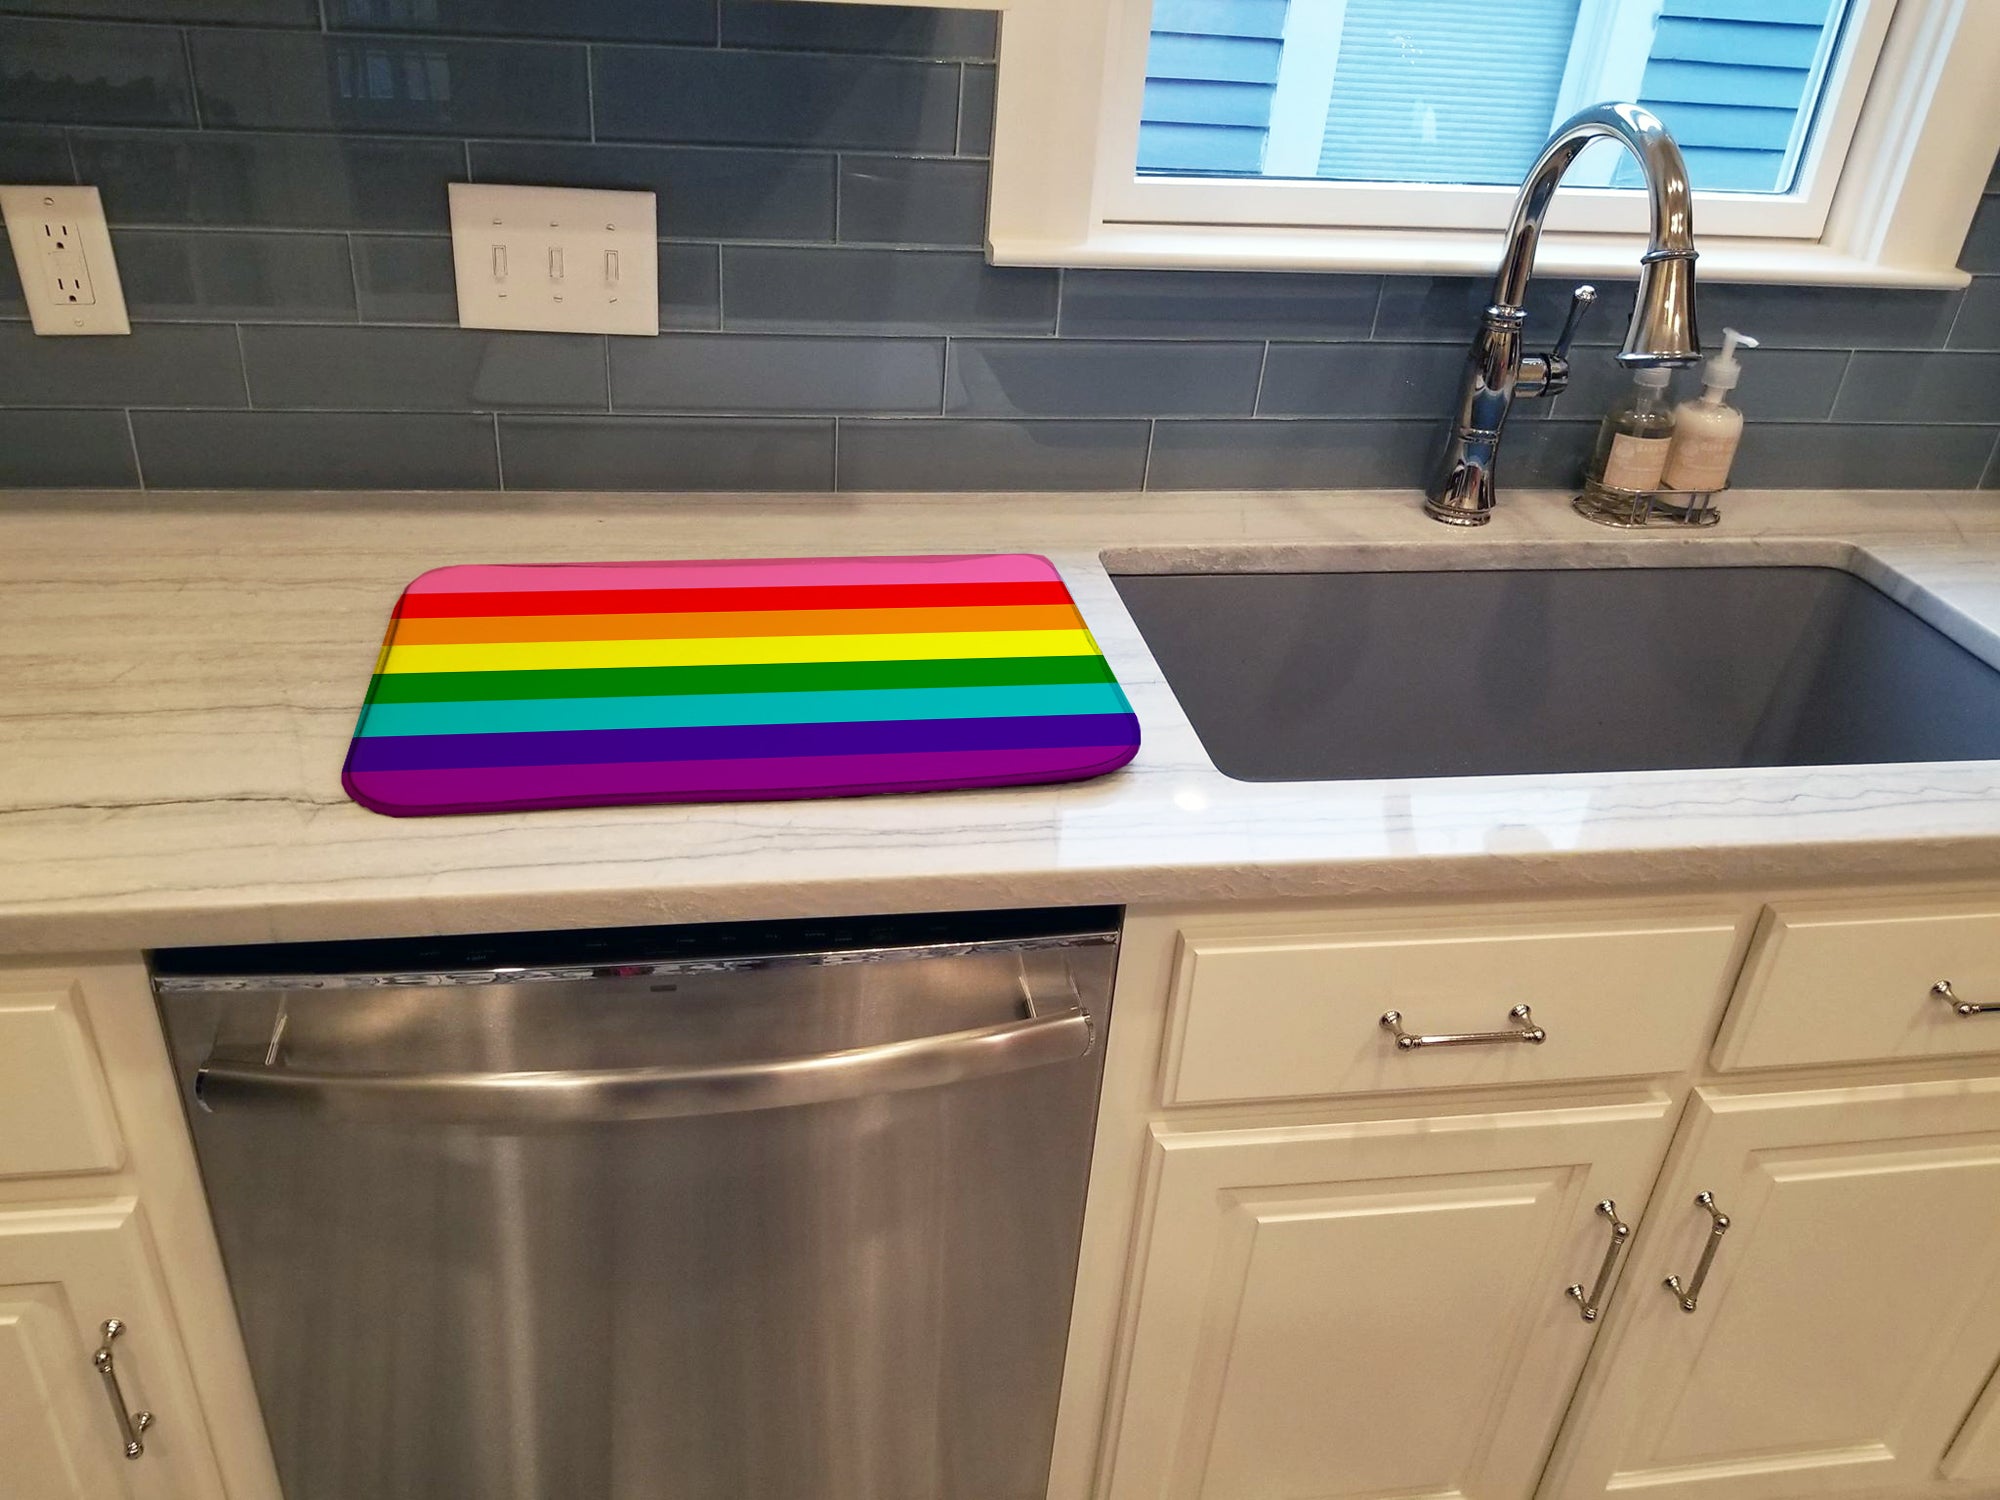 Gay Pride before 1978 Dish Drying Mat